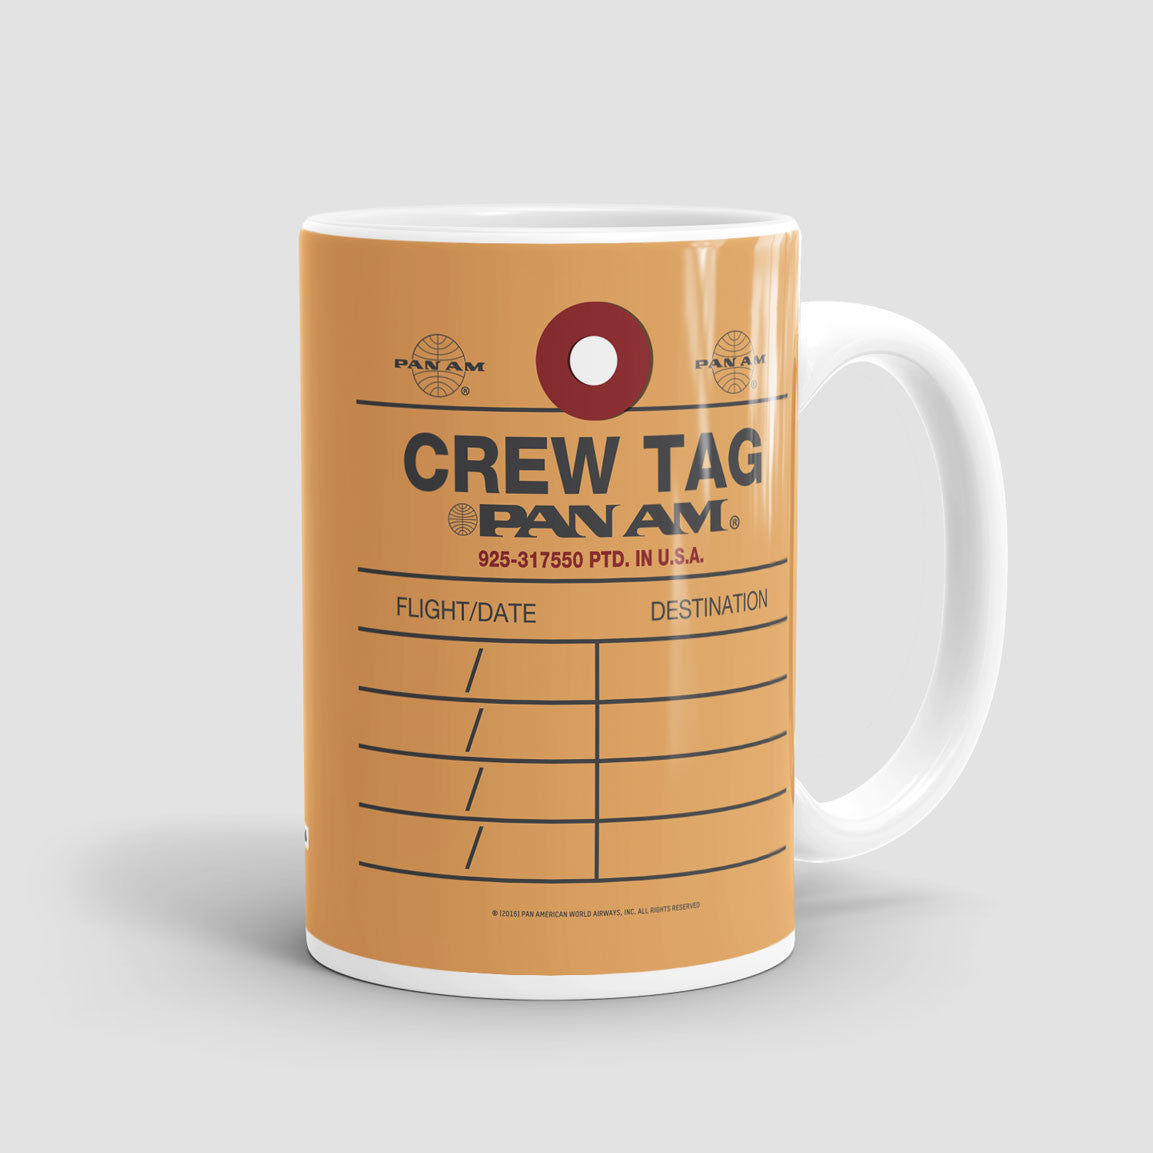 Pan Am - Crew Tag - Mug - Airportag